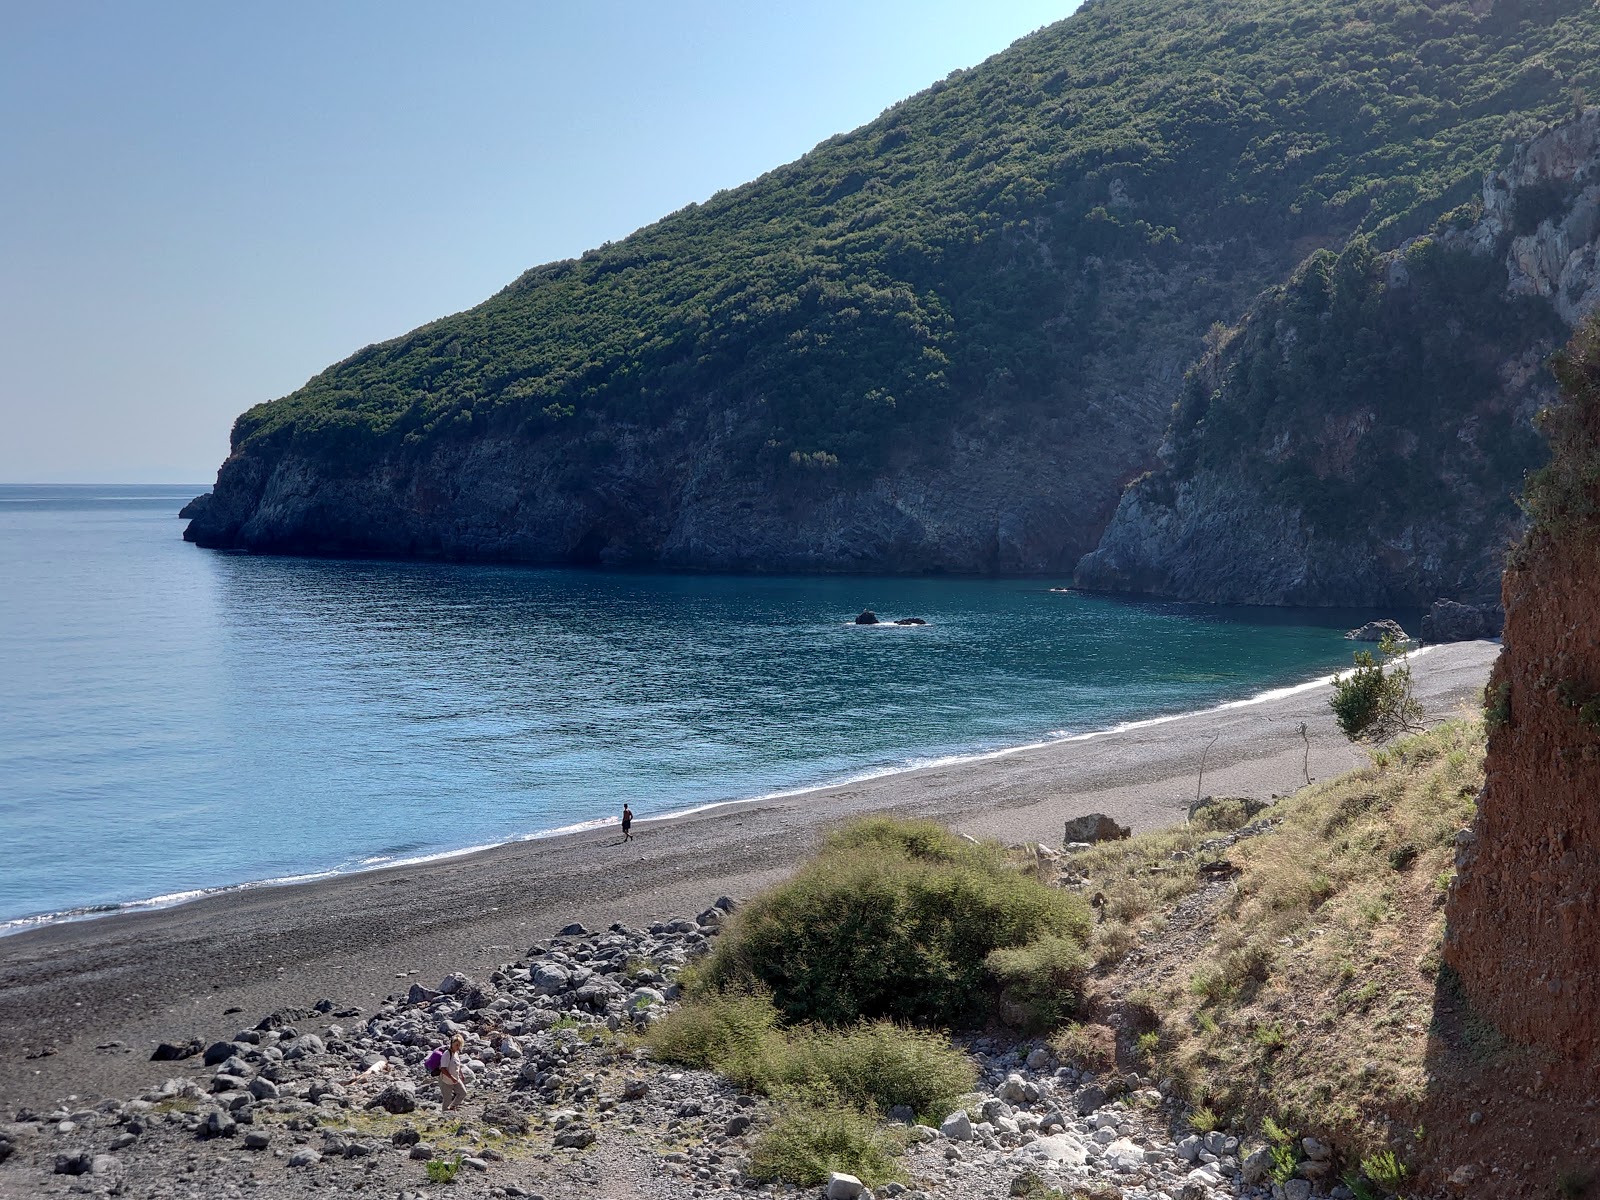 Vouvali Plajı'in fotoğrafı gri kum ve çakıl yüzey ile